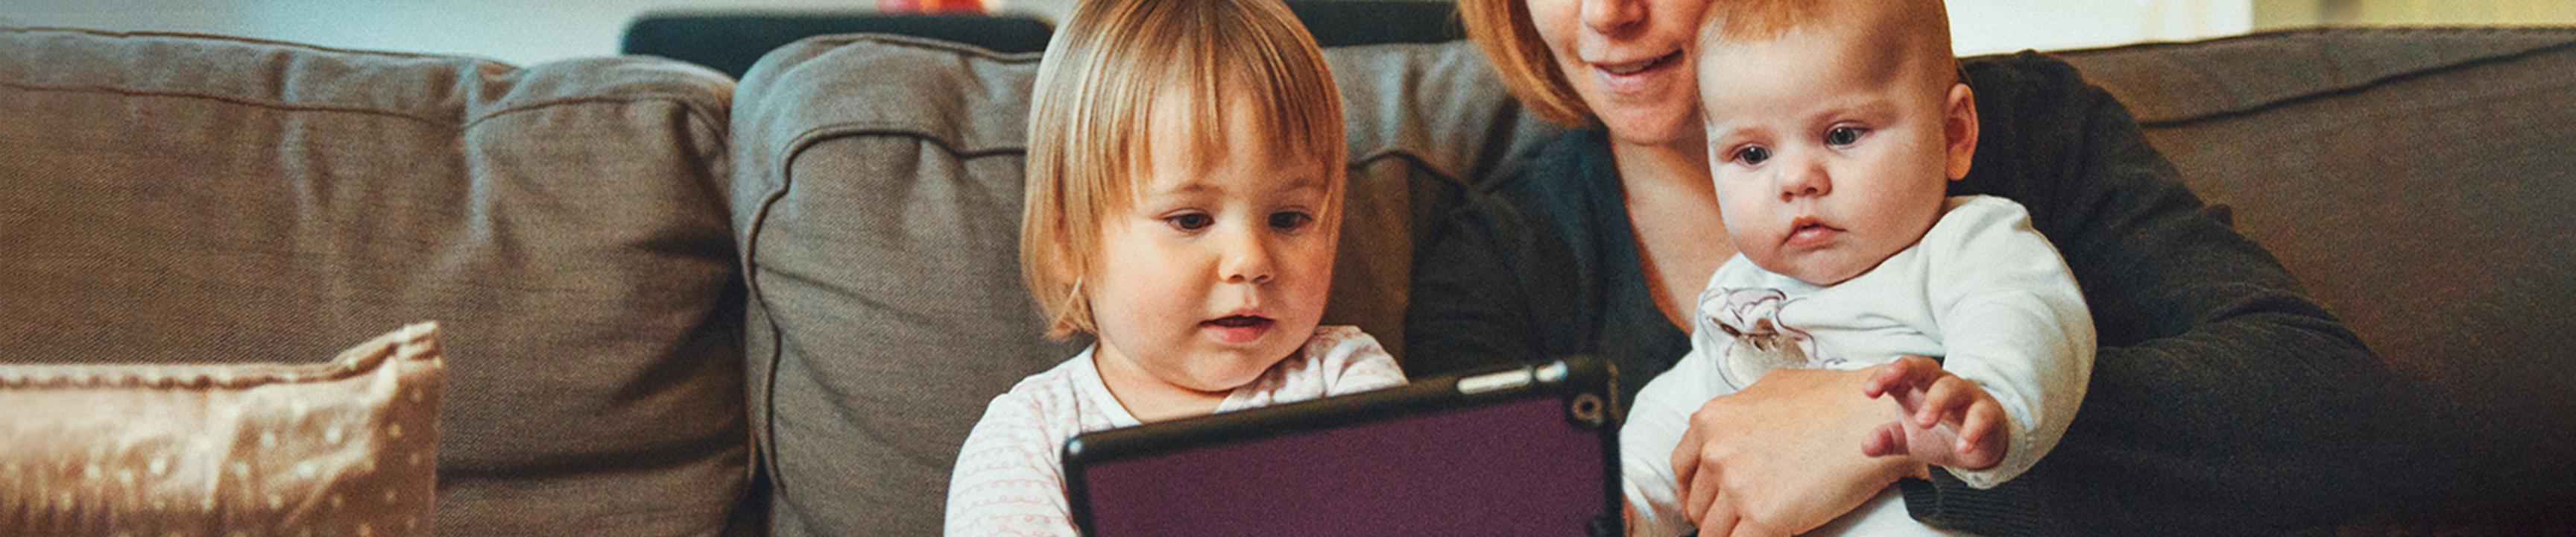 em bé và trẻ mới biết đi nhìn vào thiết bị máy tính bảng